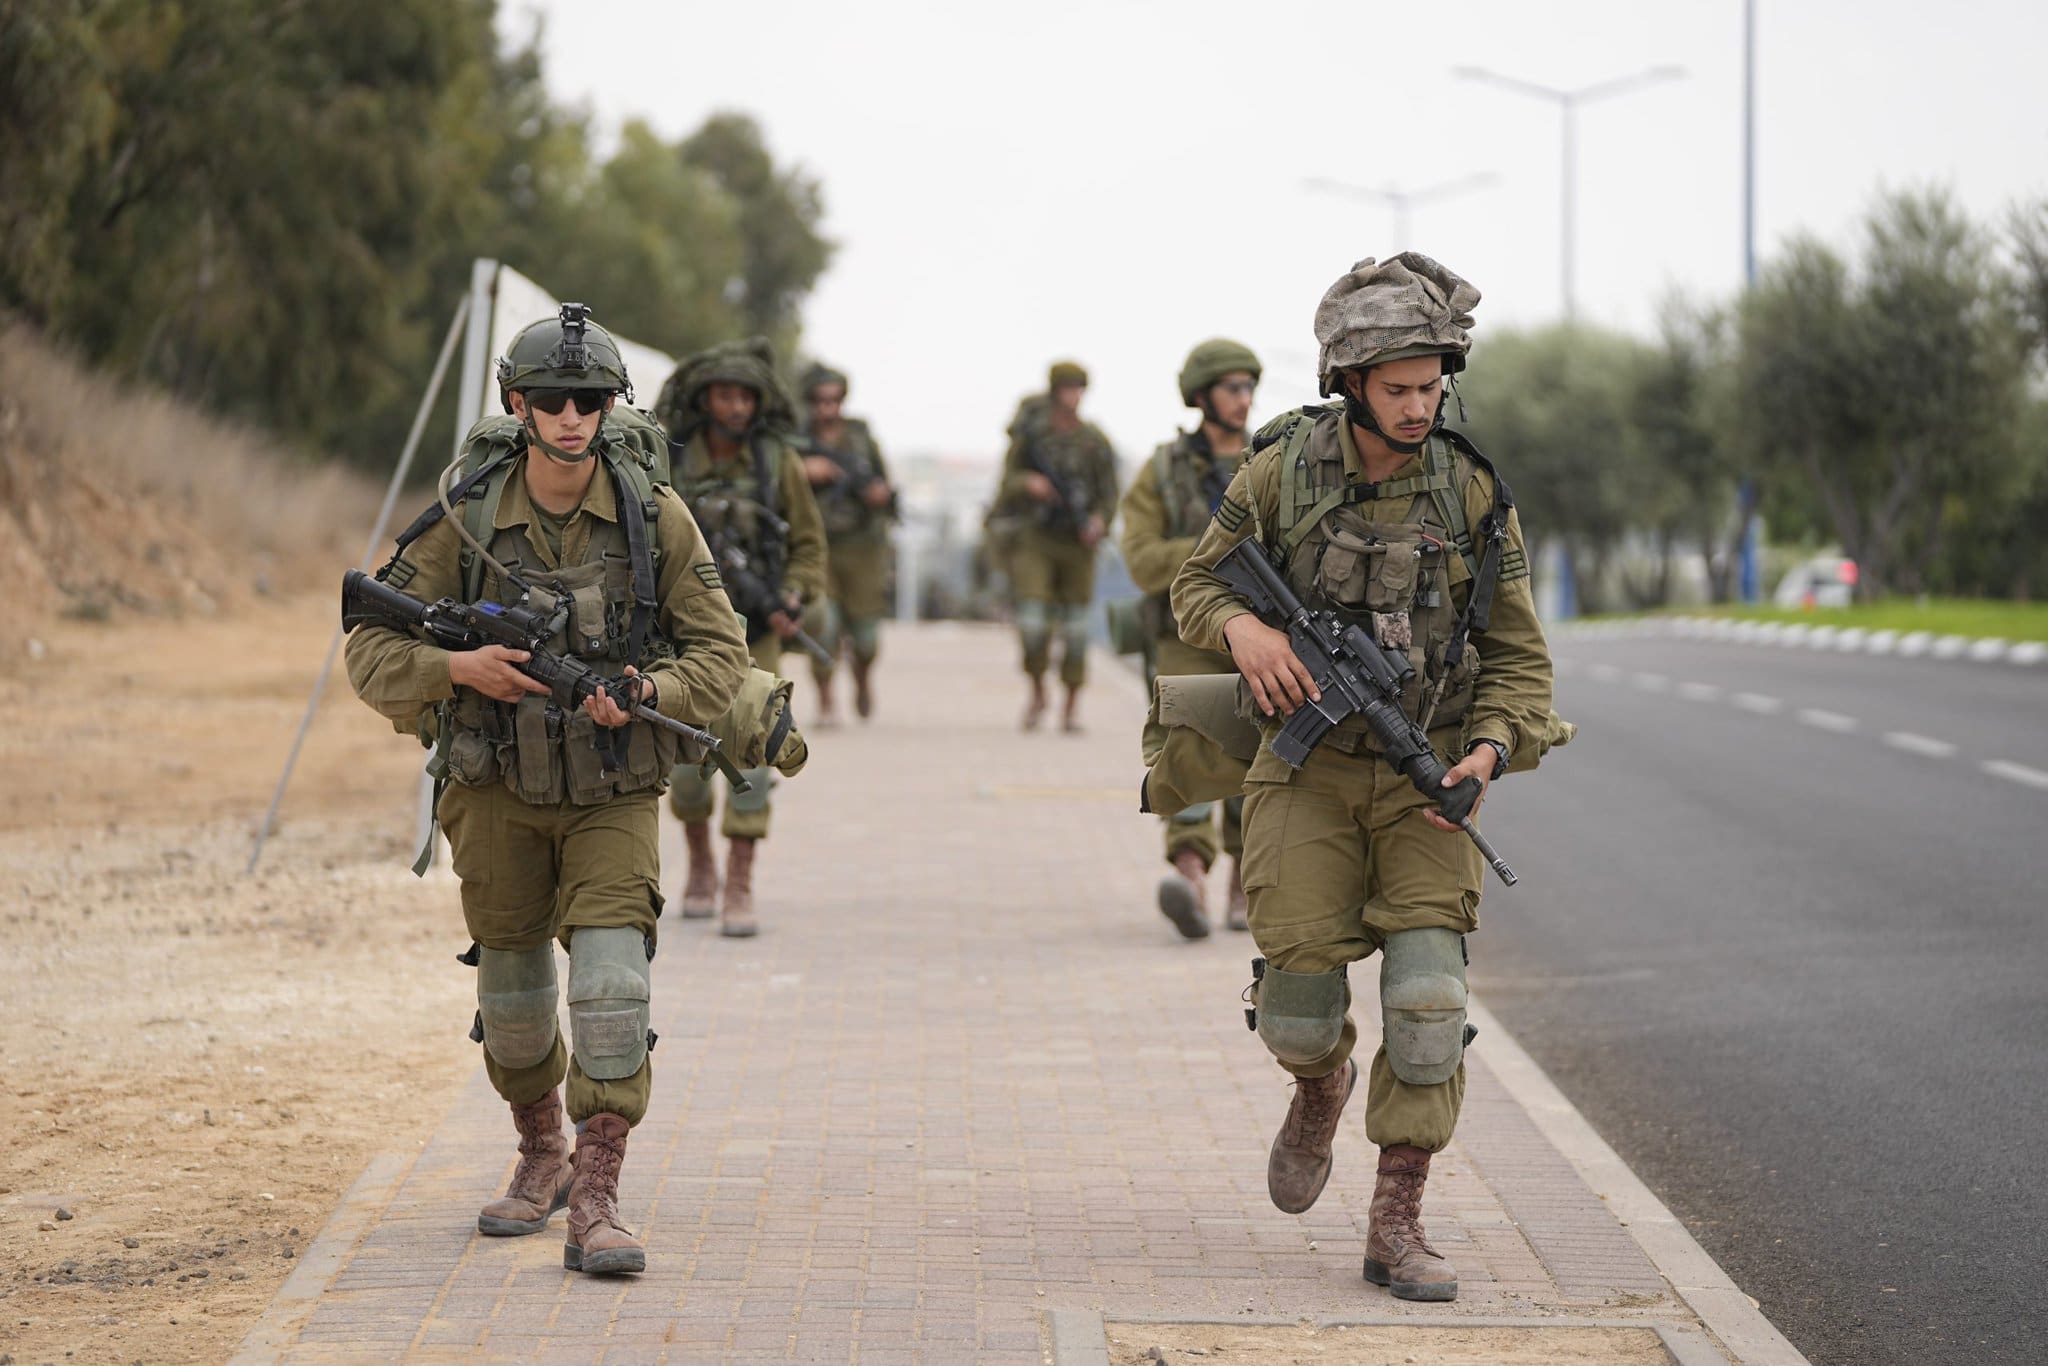 Fotografie zachytávajúce vojnu v Izraeli. Ostreľovanie a smútok